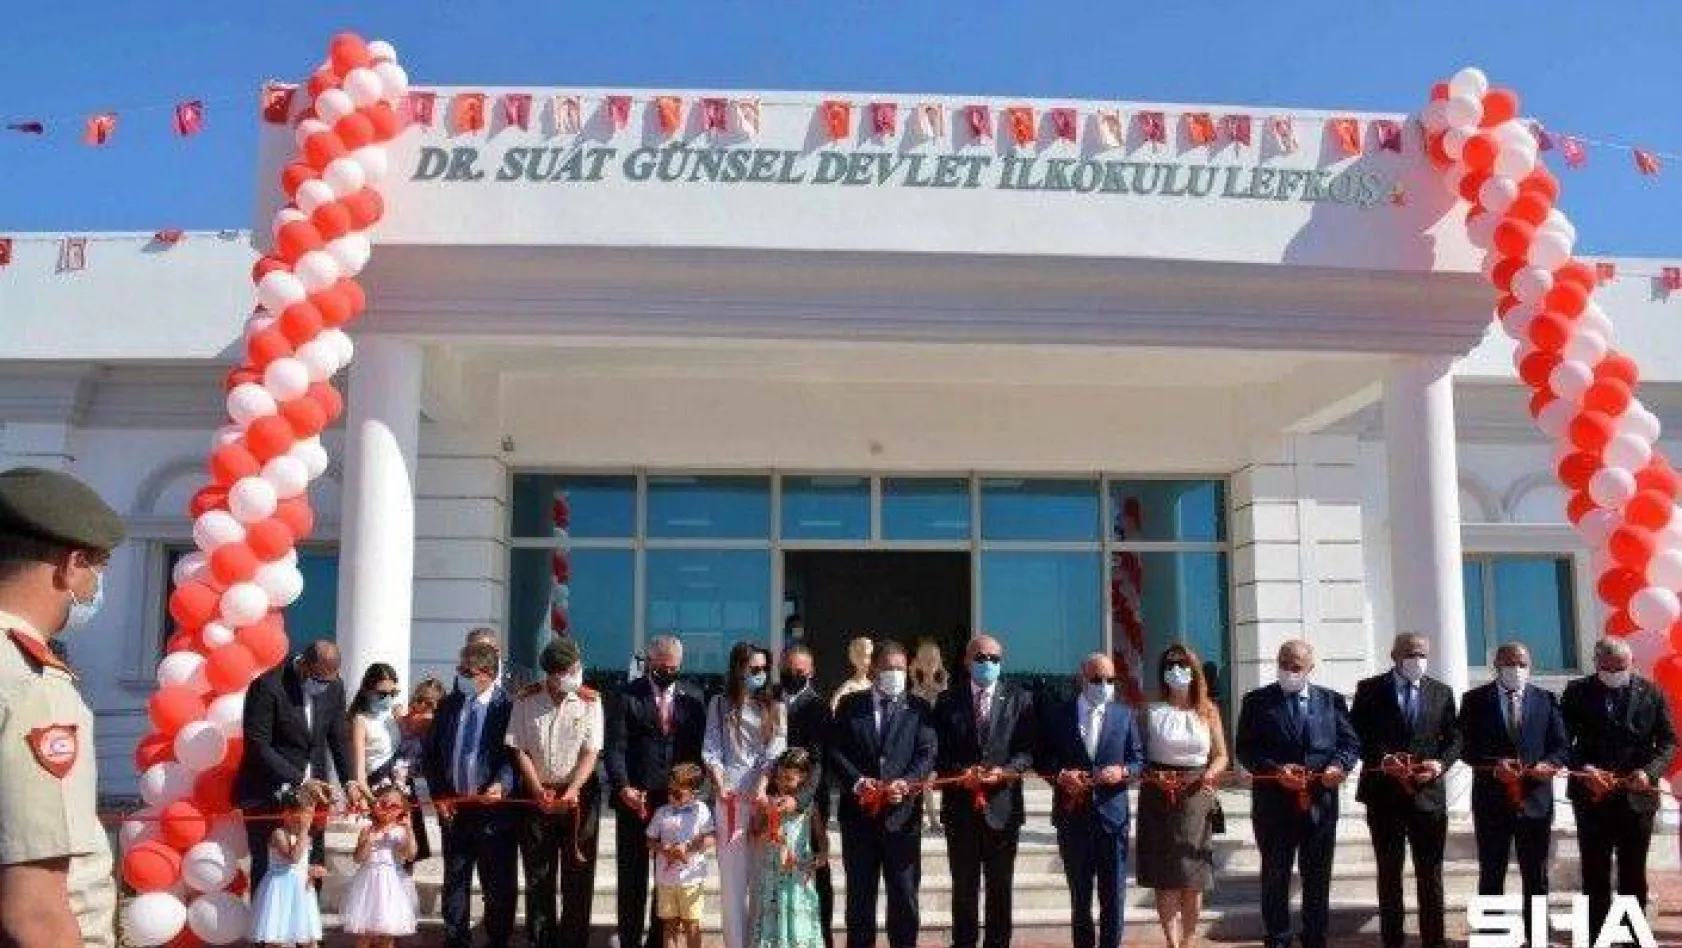 Dr. Suat Günsel Devlet İlkokulu Lefkoşa eğitime açıldı